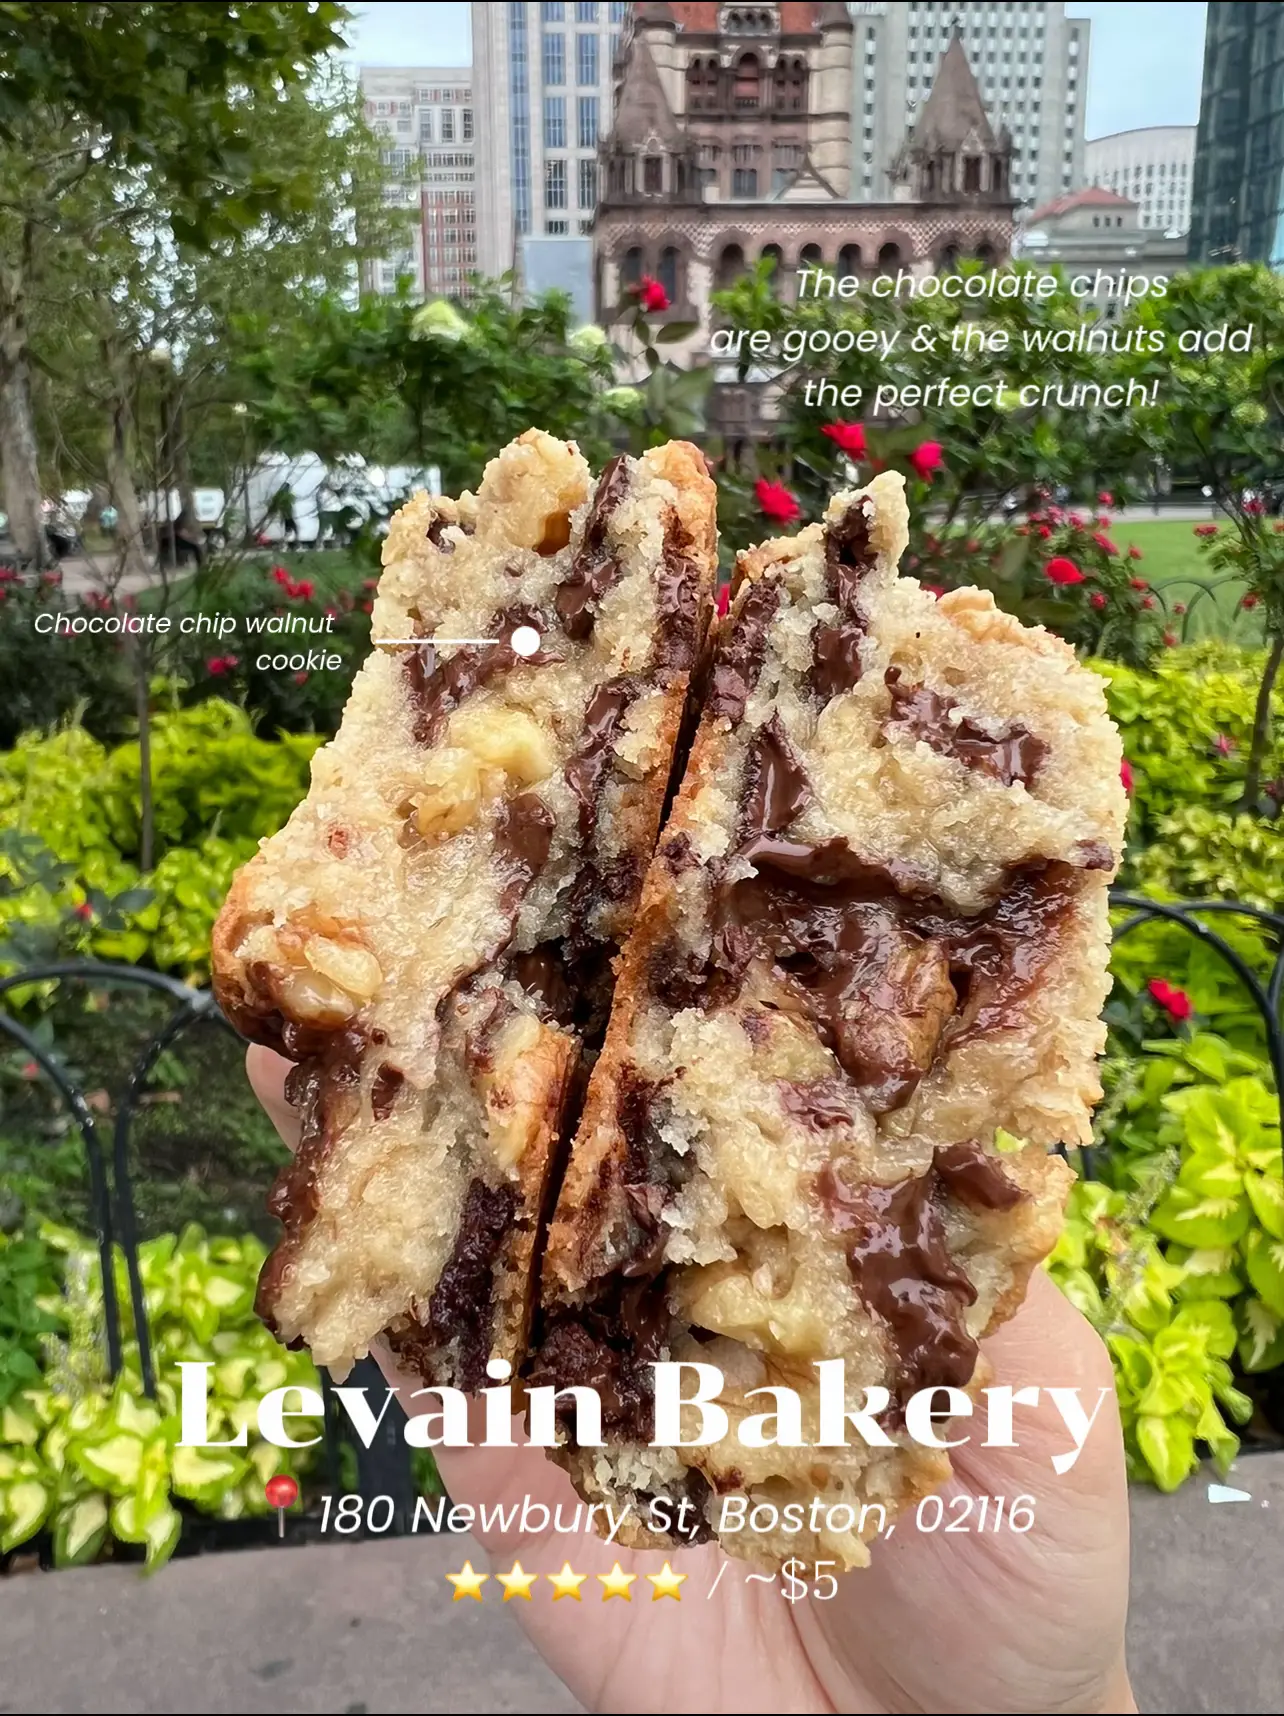 Levain Bakery comes to Boston